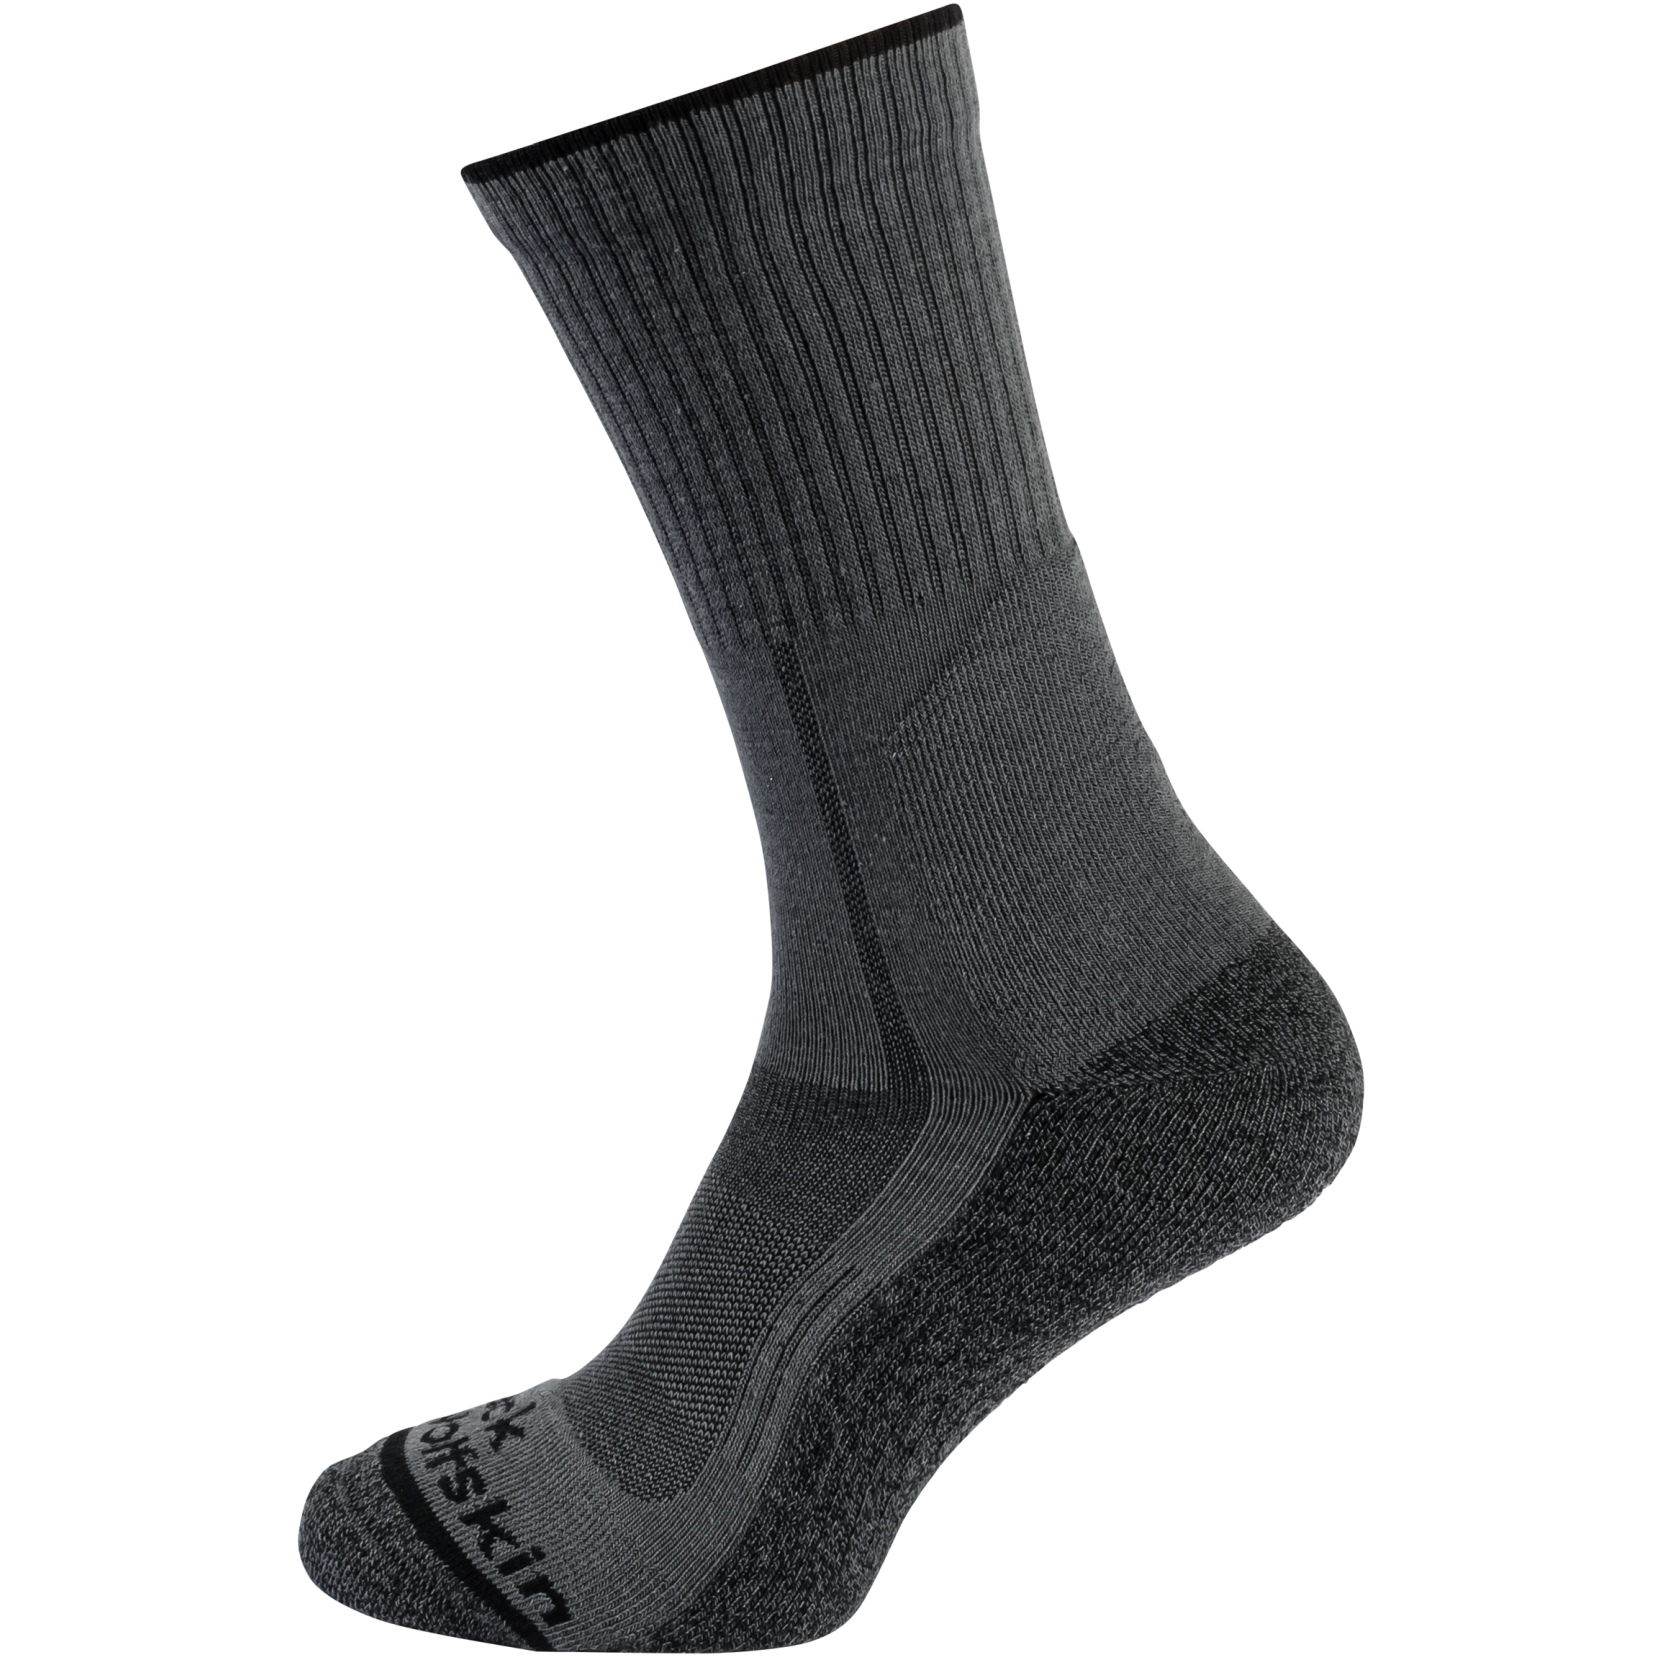 Produktbild von Jack Wolfskin Hike Function Classic Cut Socken - dark grey